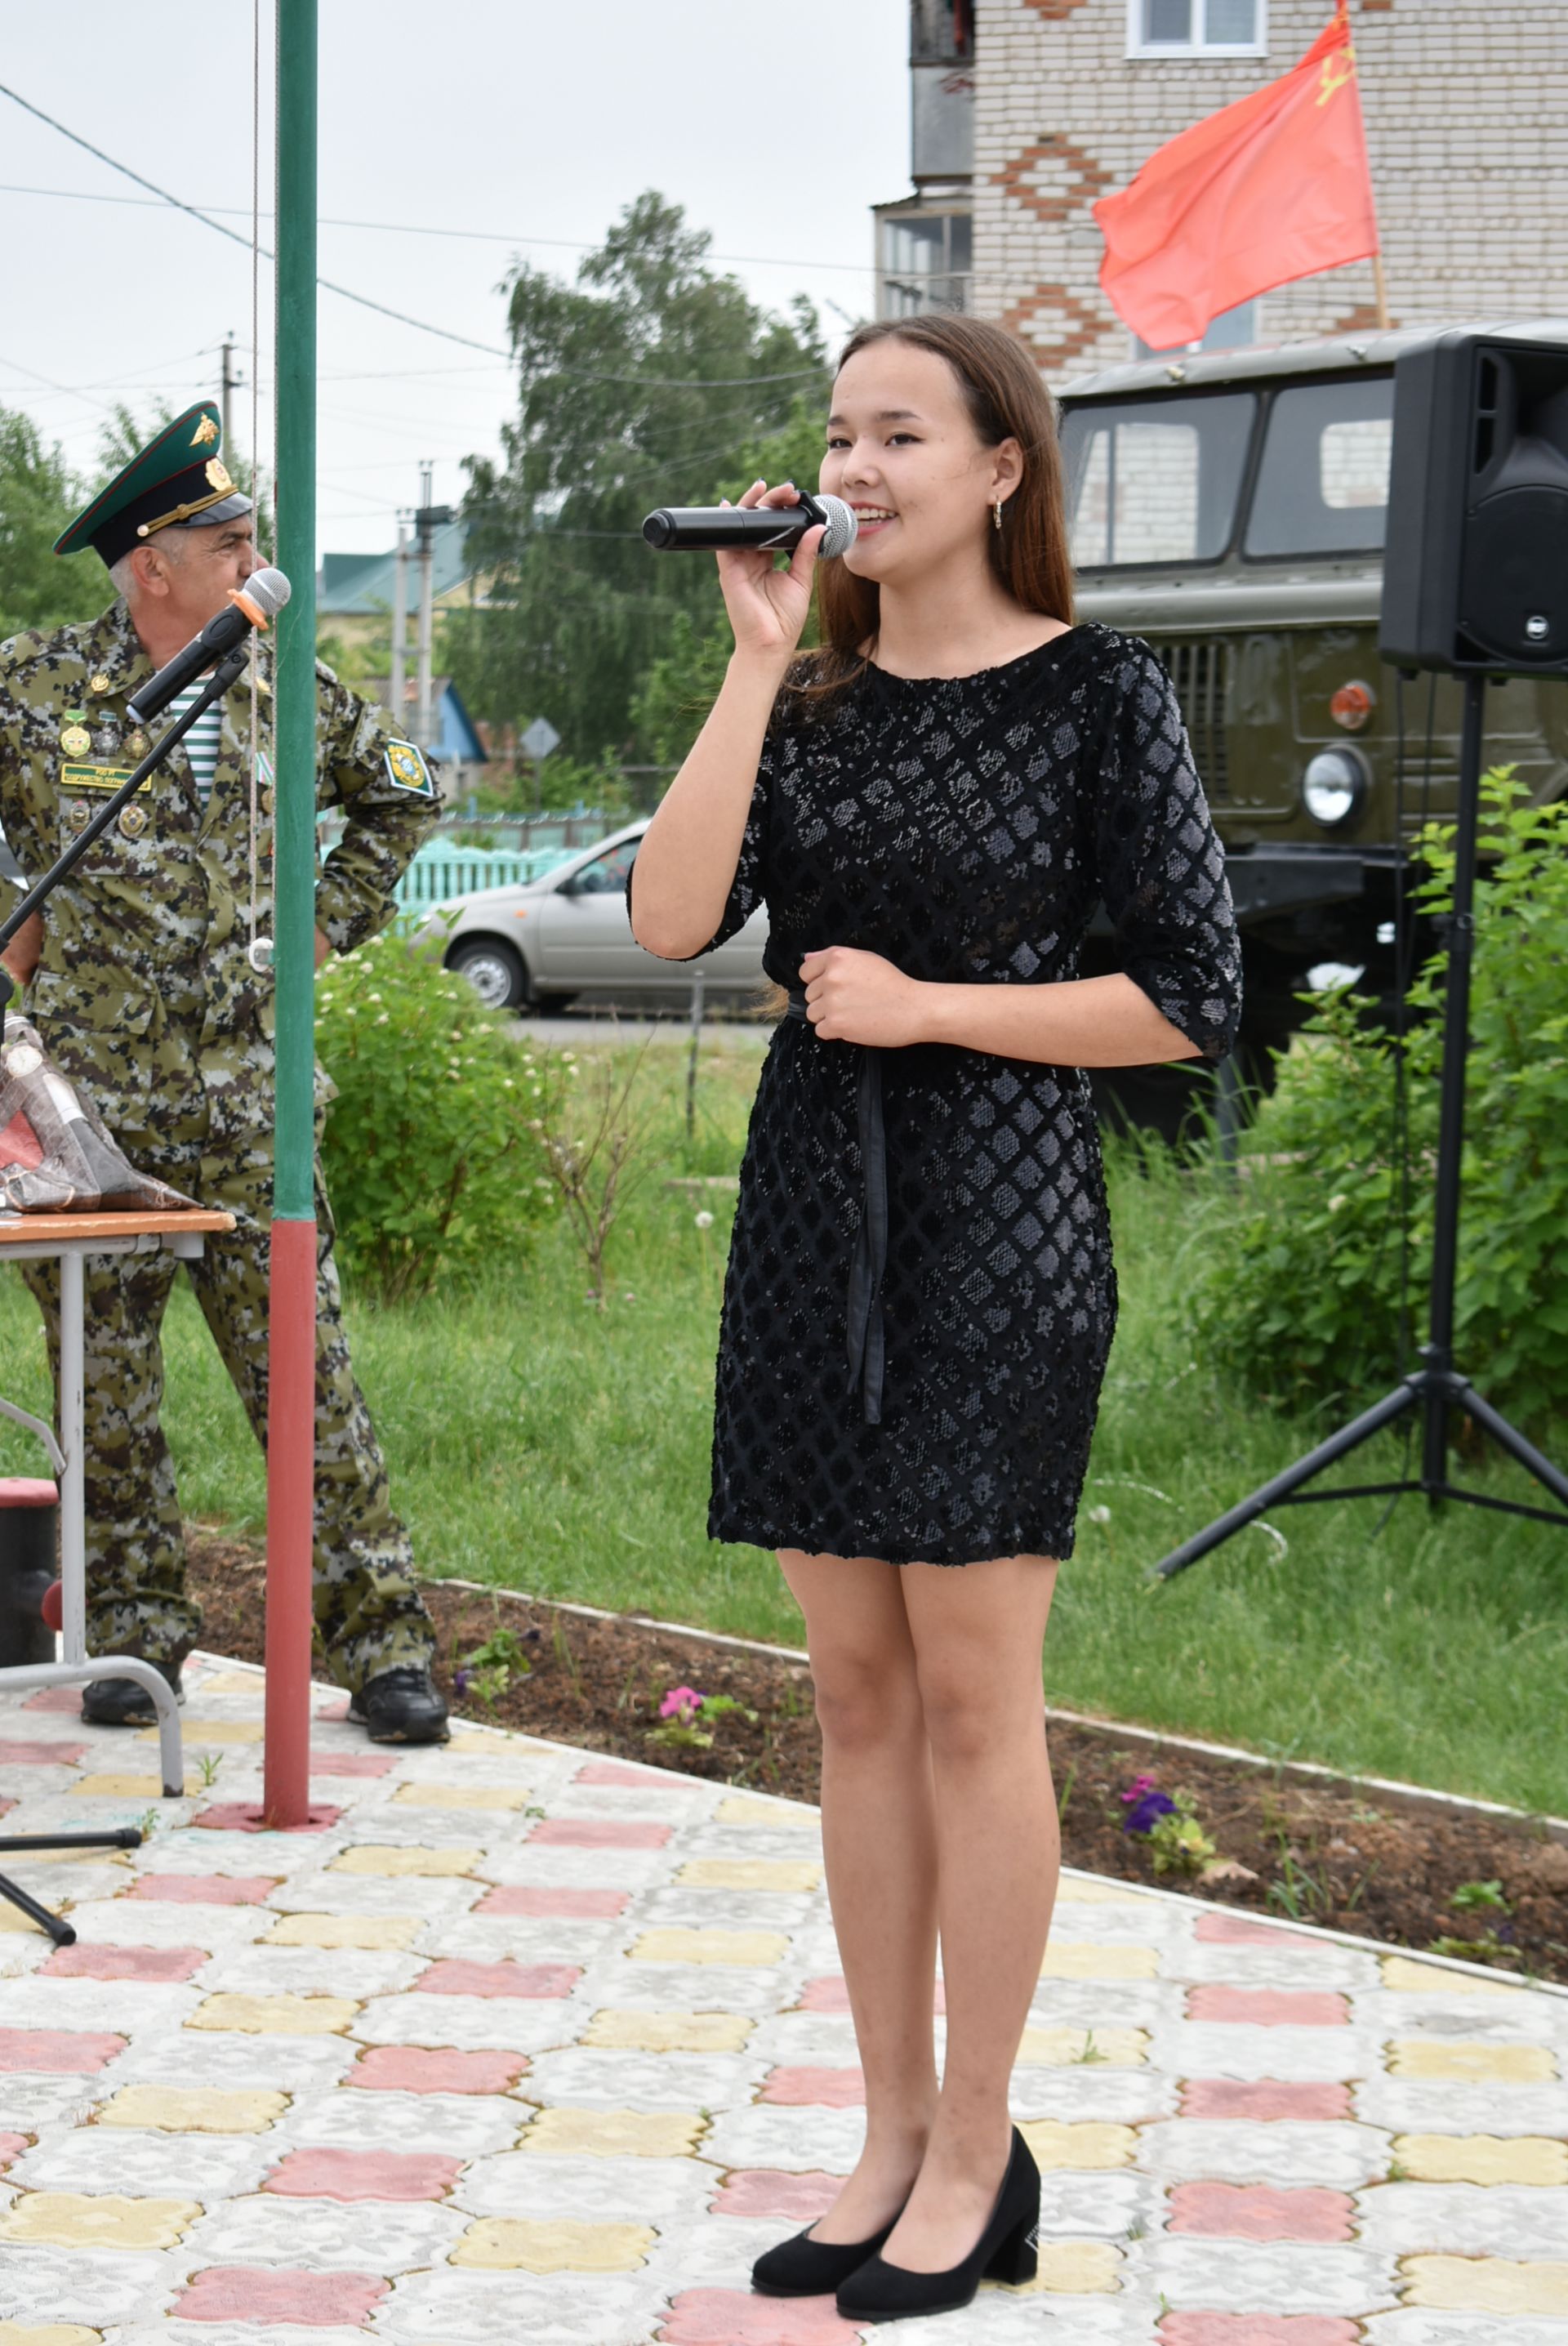 В Болгаре прошёл торжественный митинг ко Дню пограничника